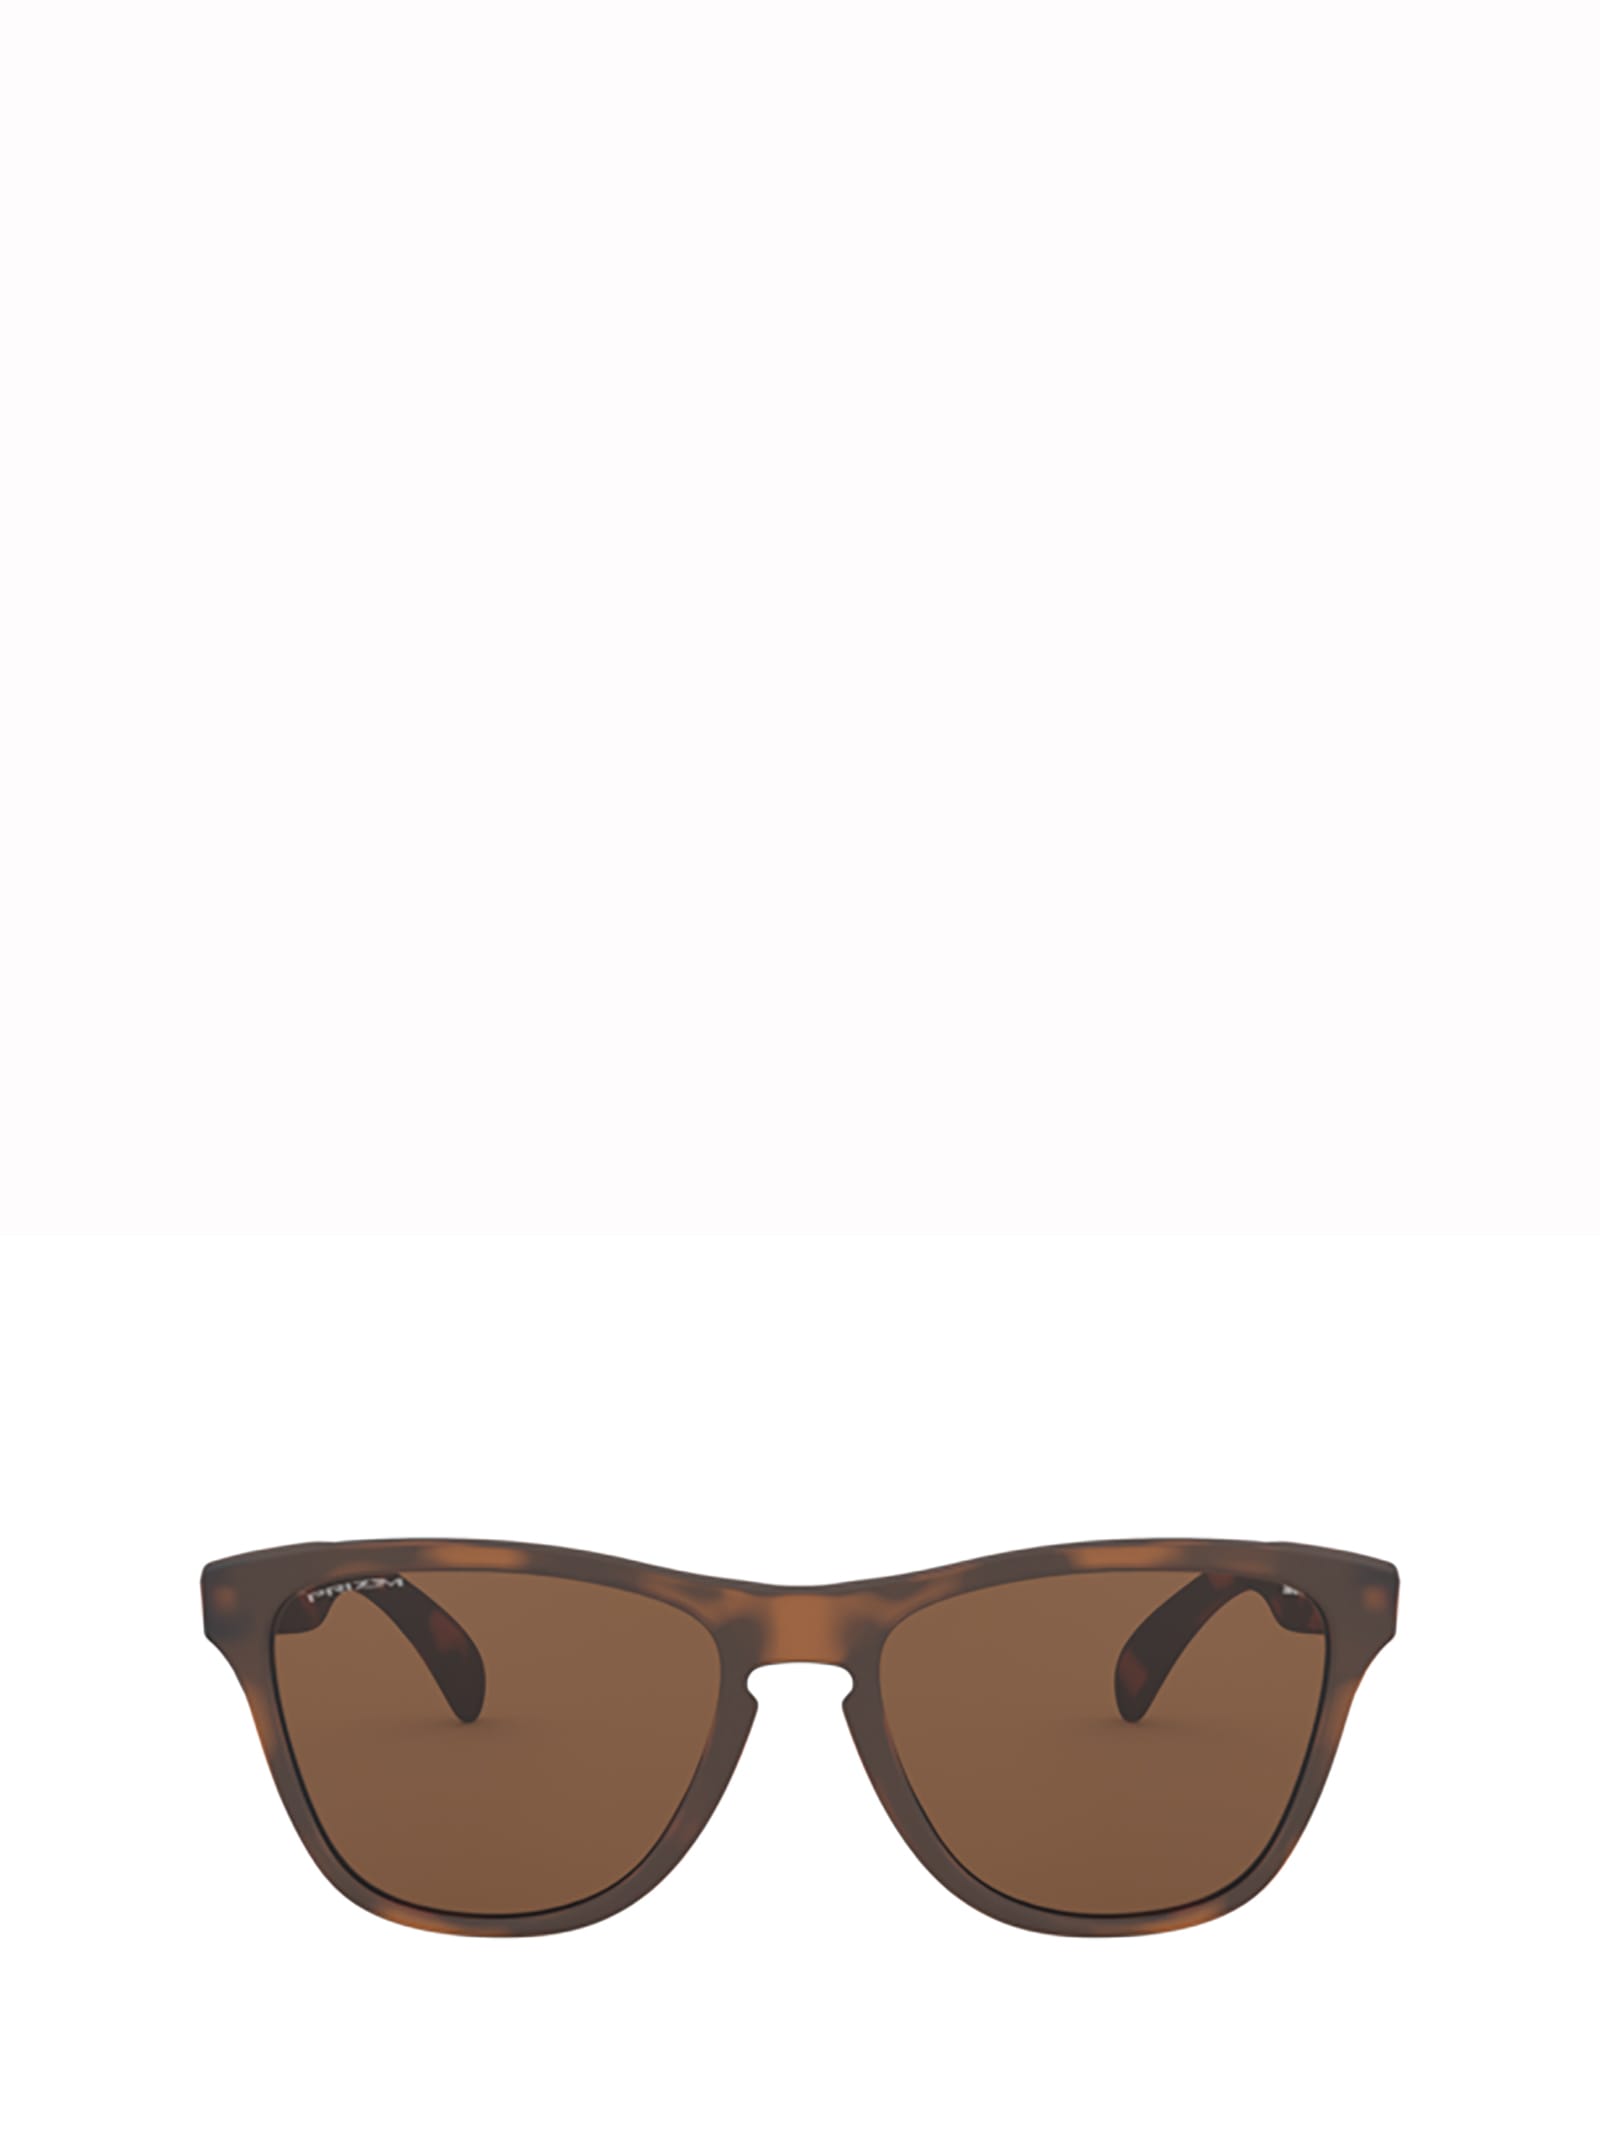 Oakley Oj9006 Matte Brown Tortoise Sunglasses